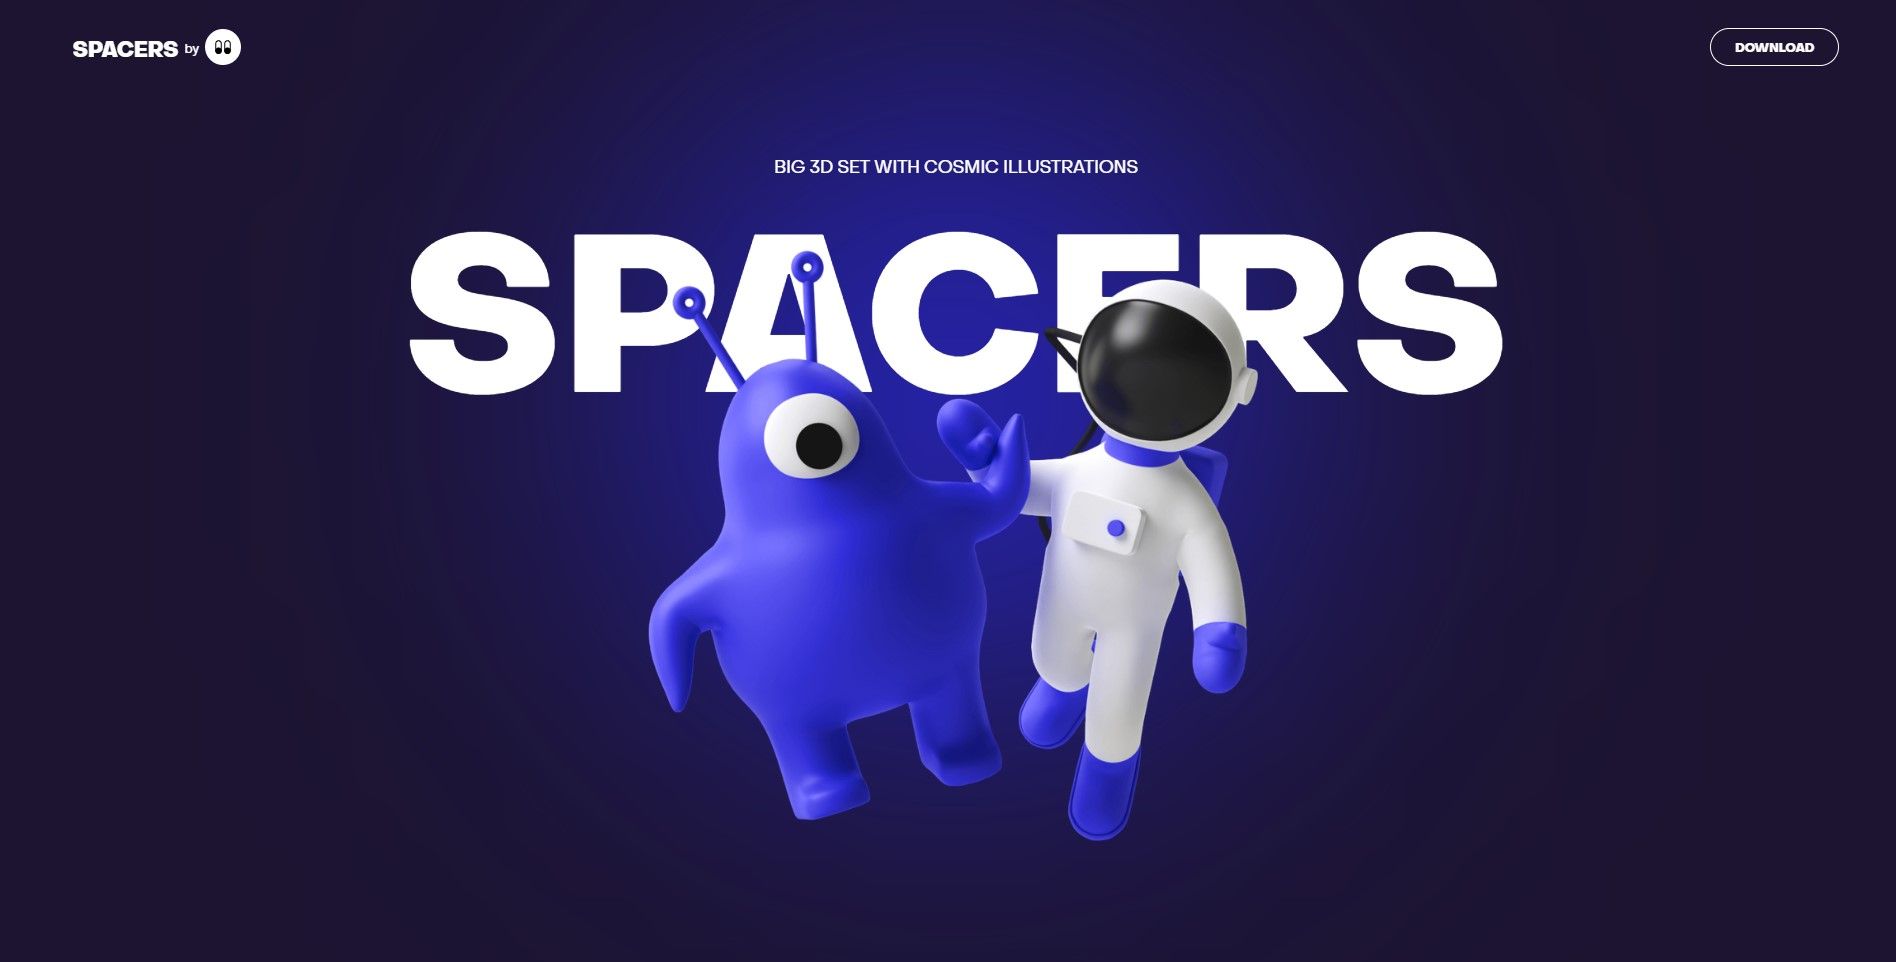 Spacers website homepage screenshot